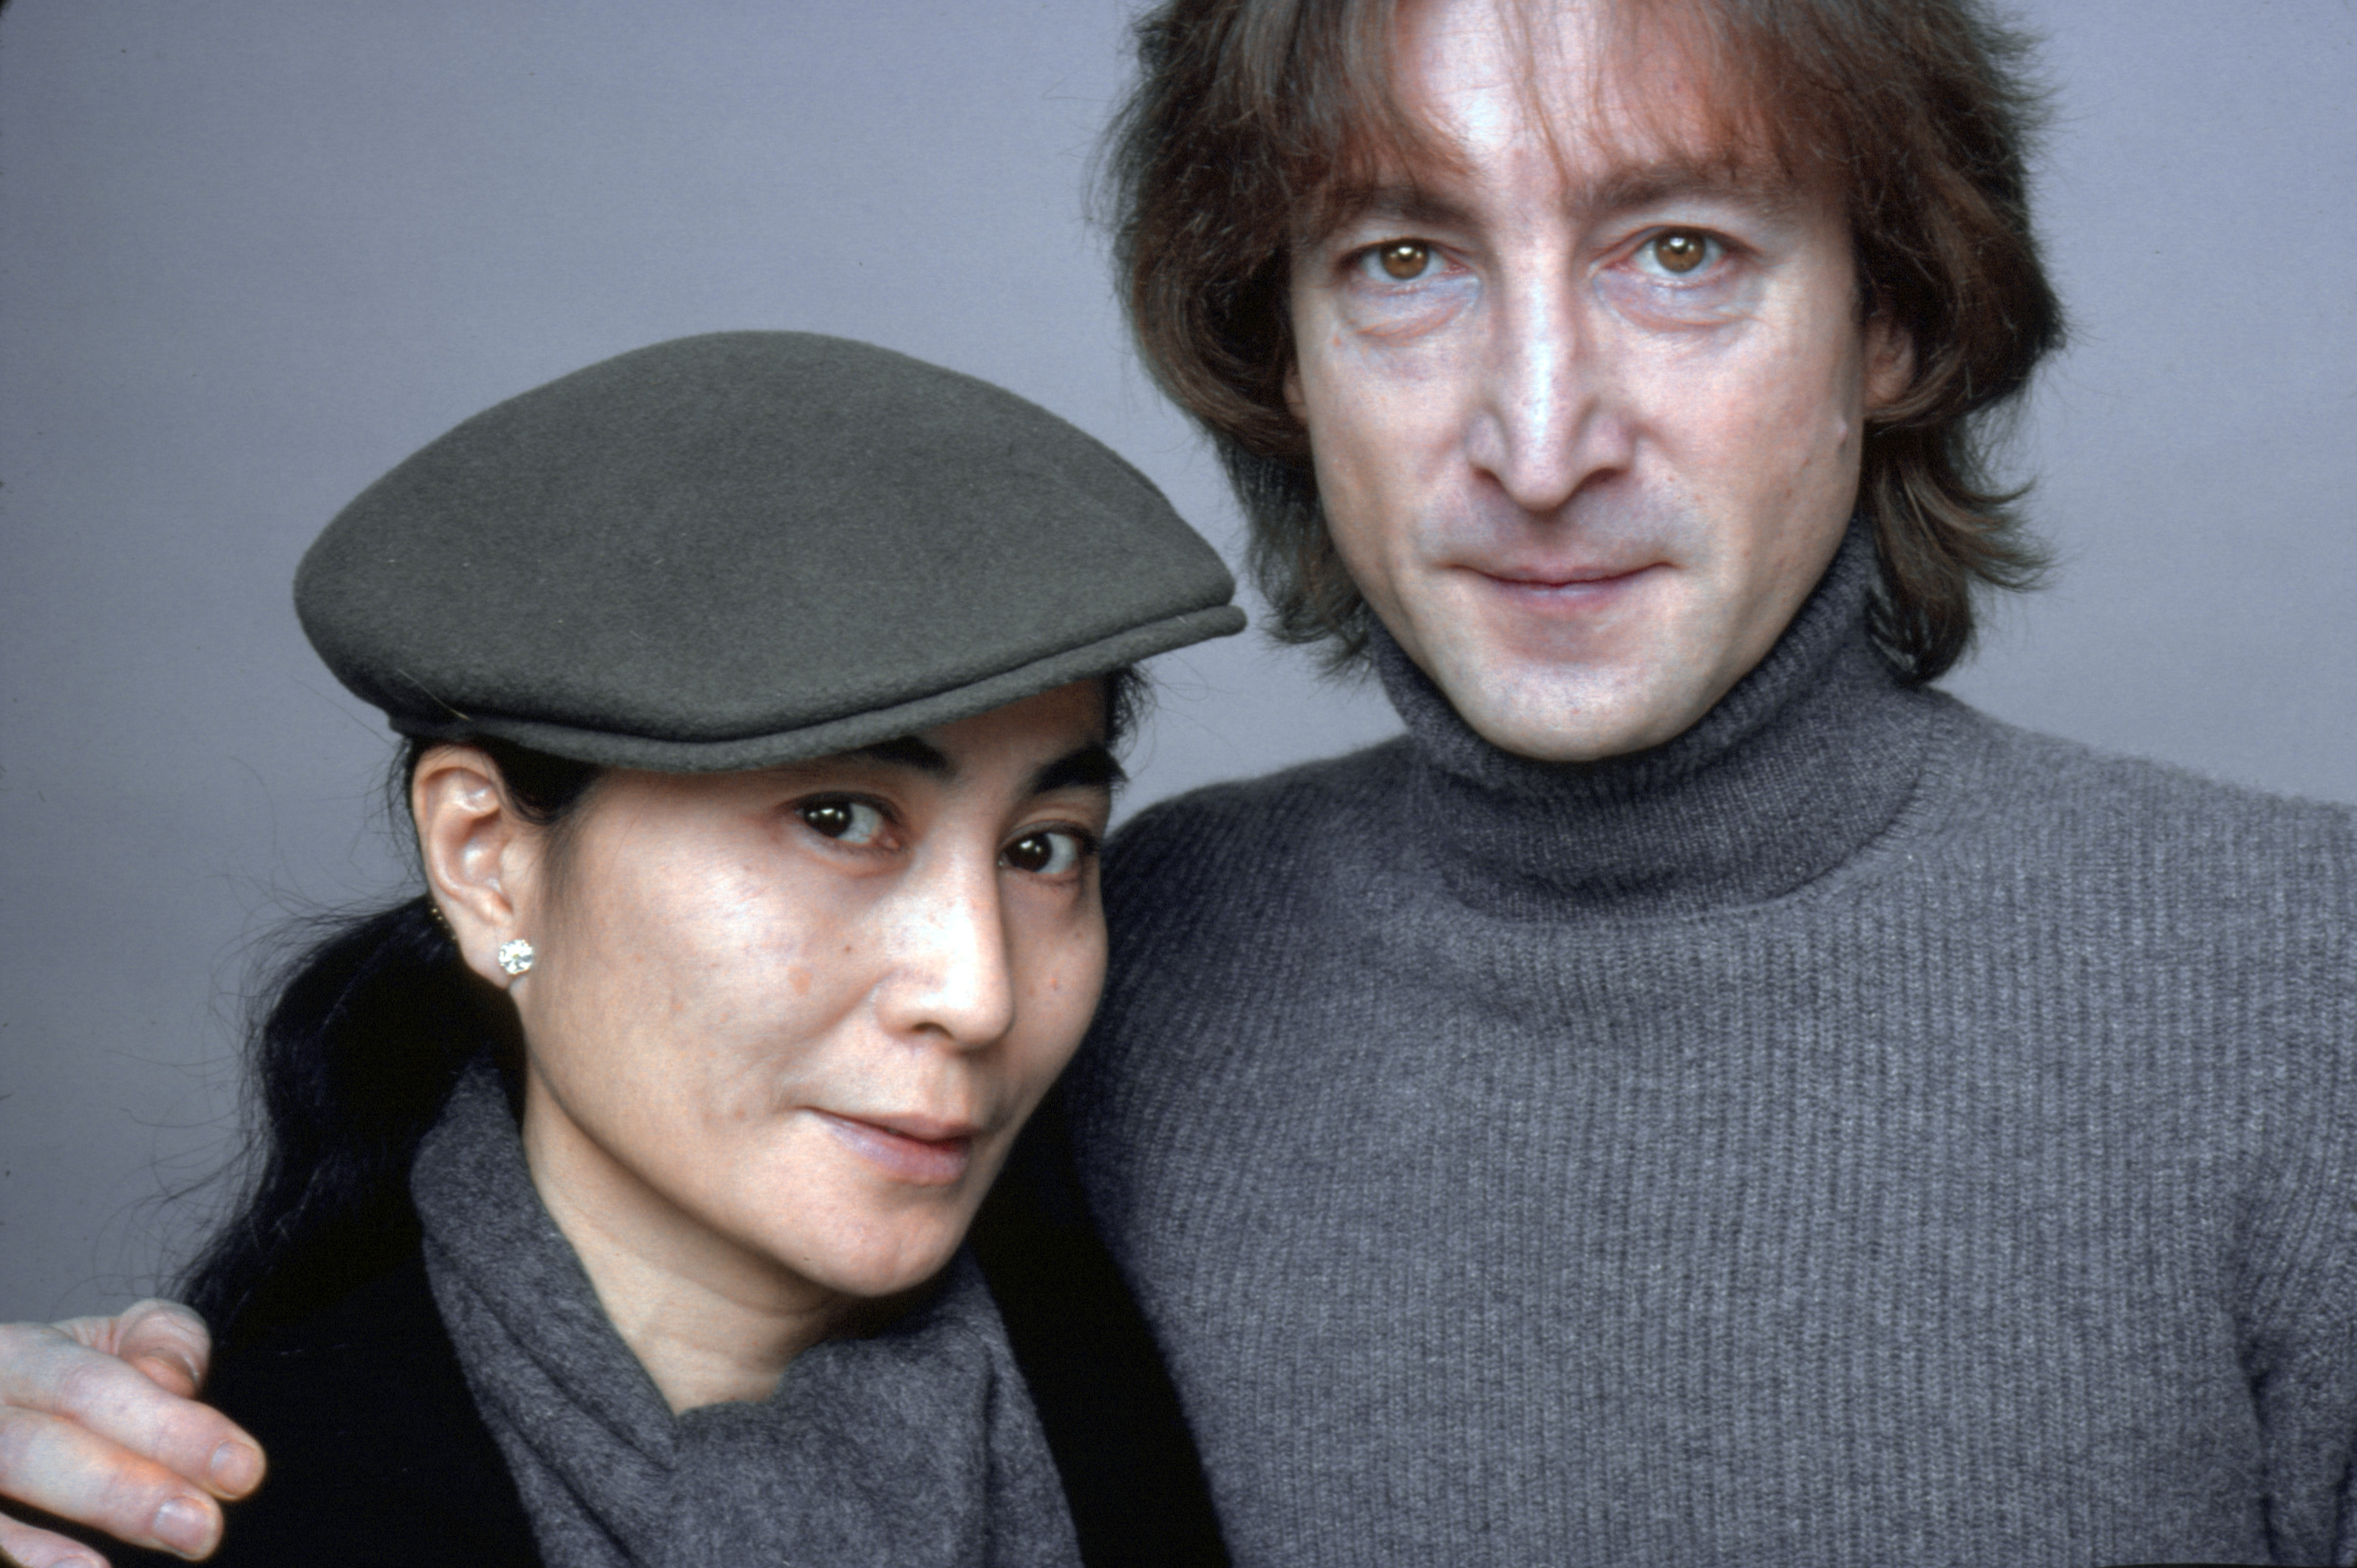 The Beatles' John Lennon putting his arm around Yoko Ono